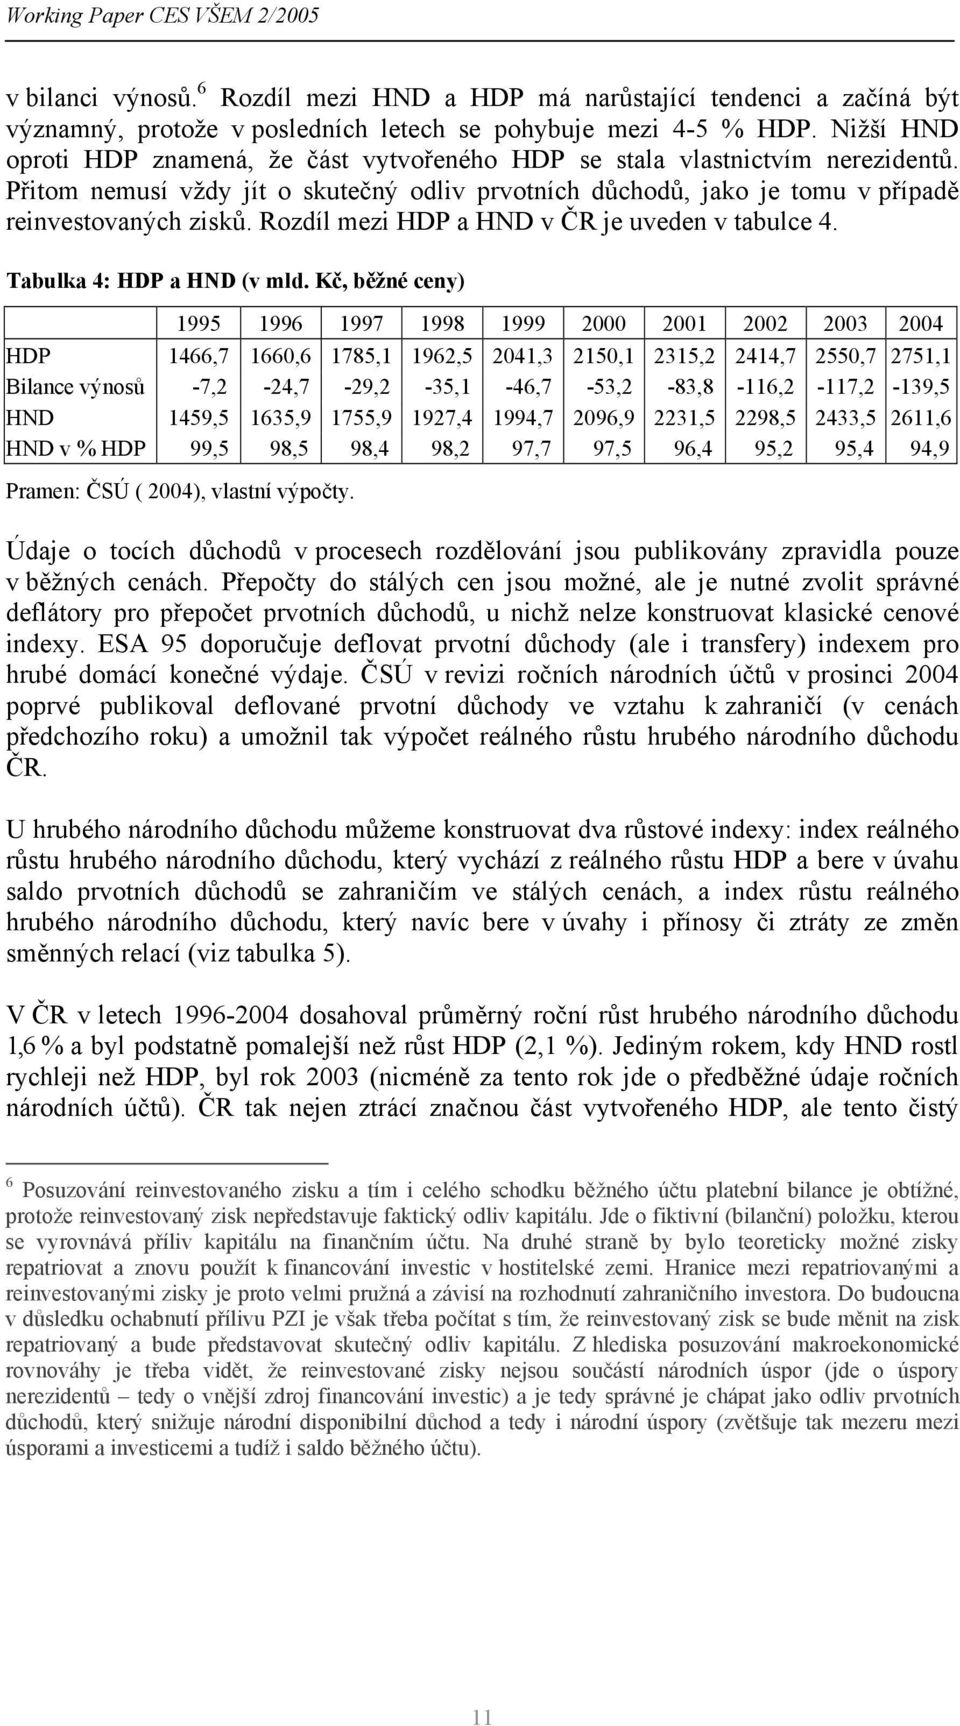 Rozdíl mezi HDP a HND v ČR je uveden v tabulce 4. Tabulka 4: HDP a HND (v mld.